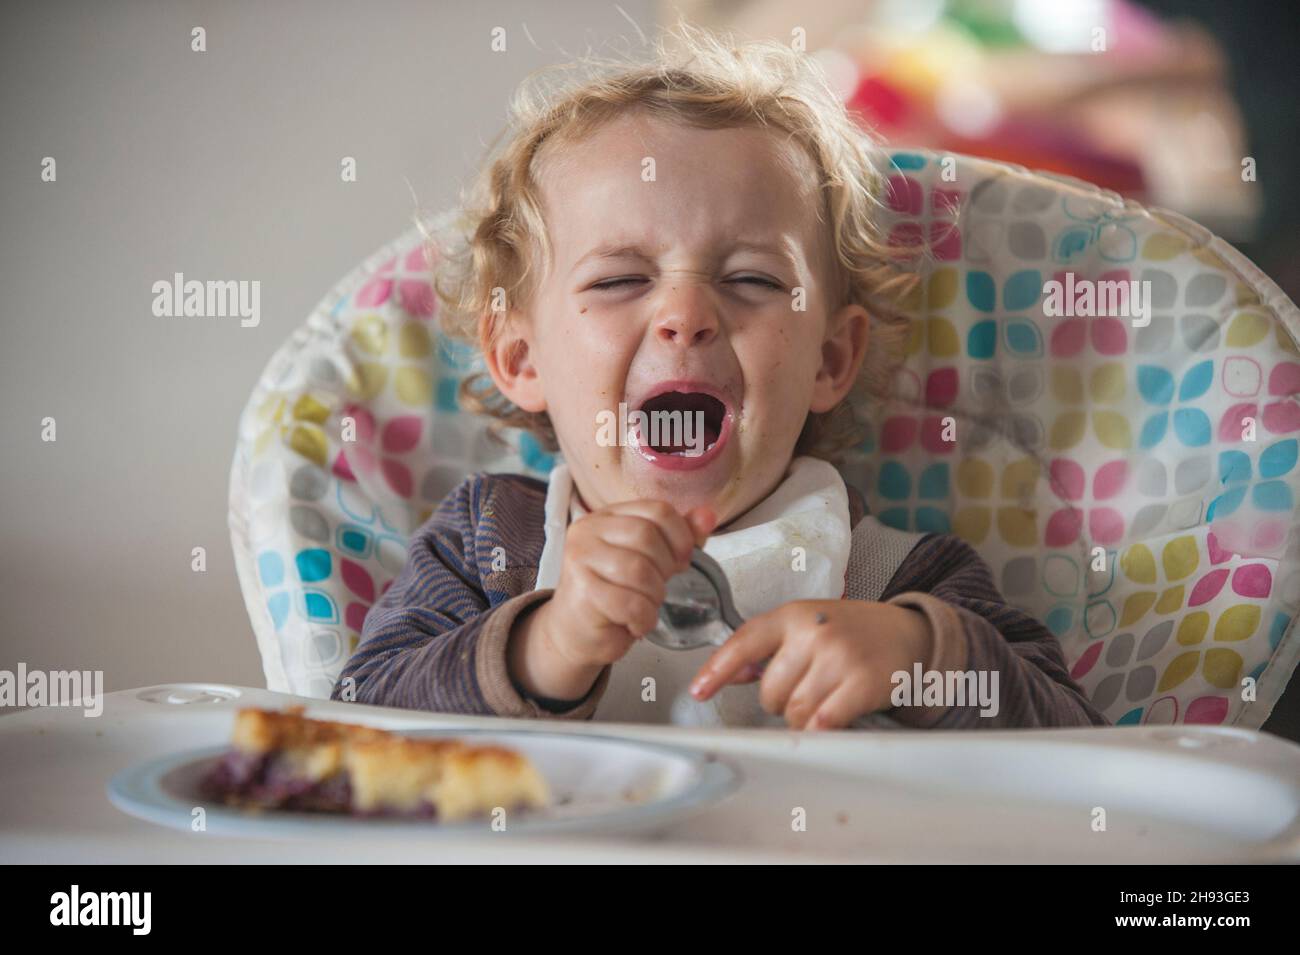 Une petite fille de 2 ans pleure alors qu'elle est assise sur une chaise haute avec un gâteau comme collation de l'après-midi Banque D'Images